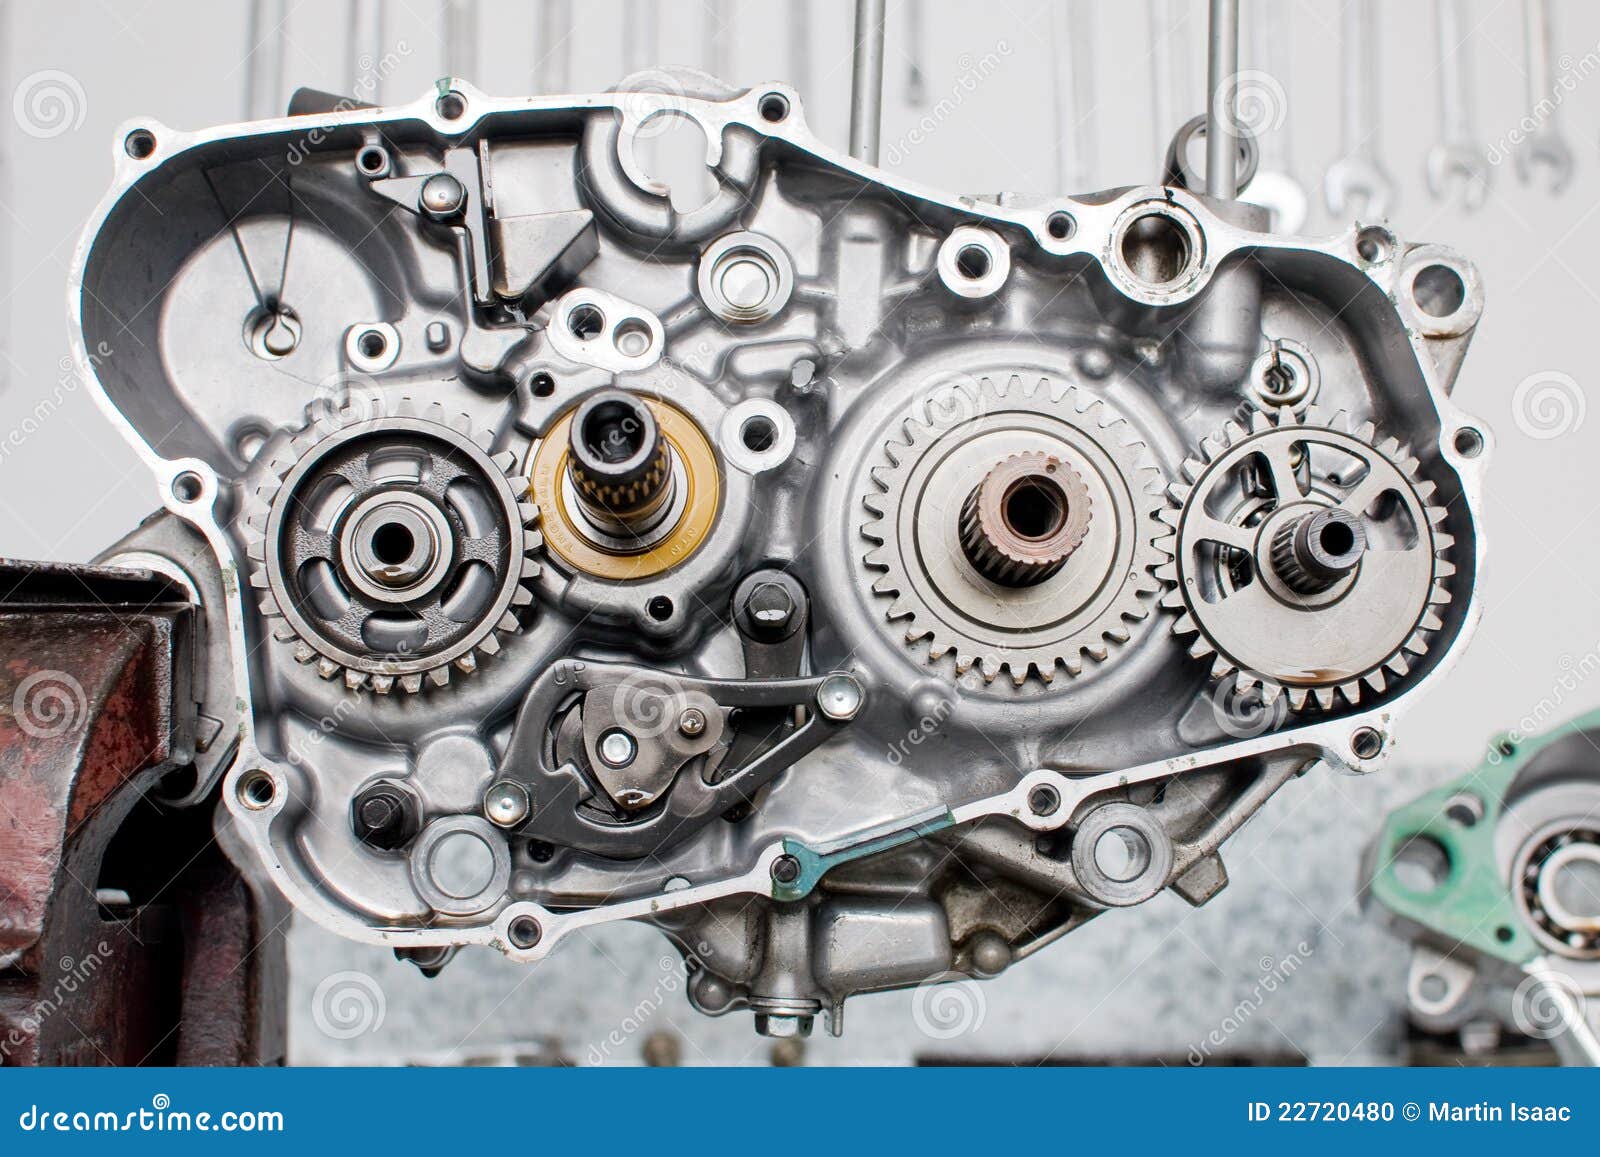 Engine Parts Stock Photo - Image: 22720480